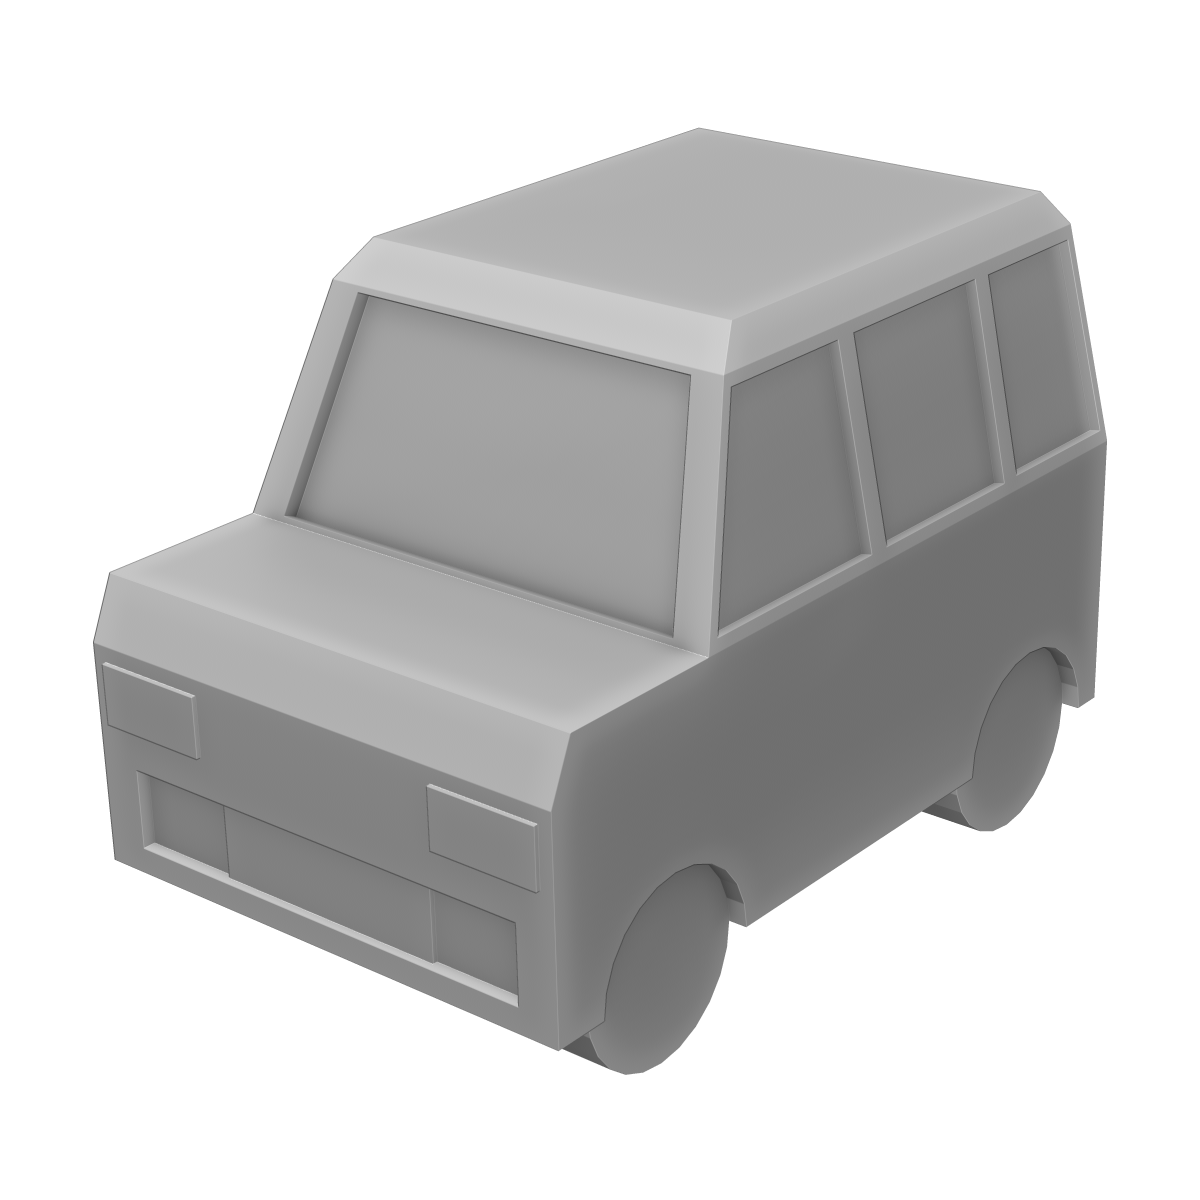 車(ボックス型)の3Dイラスト